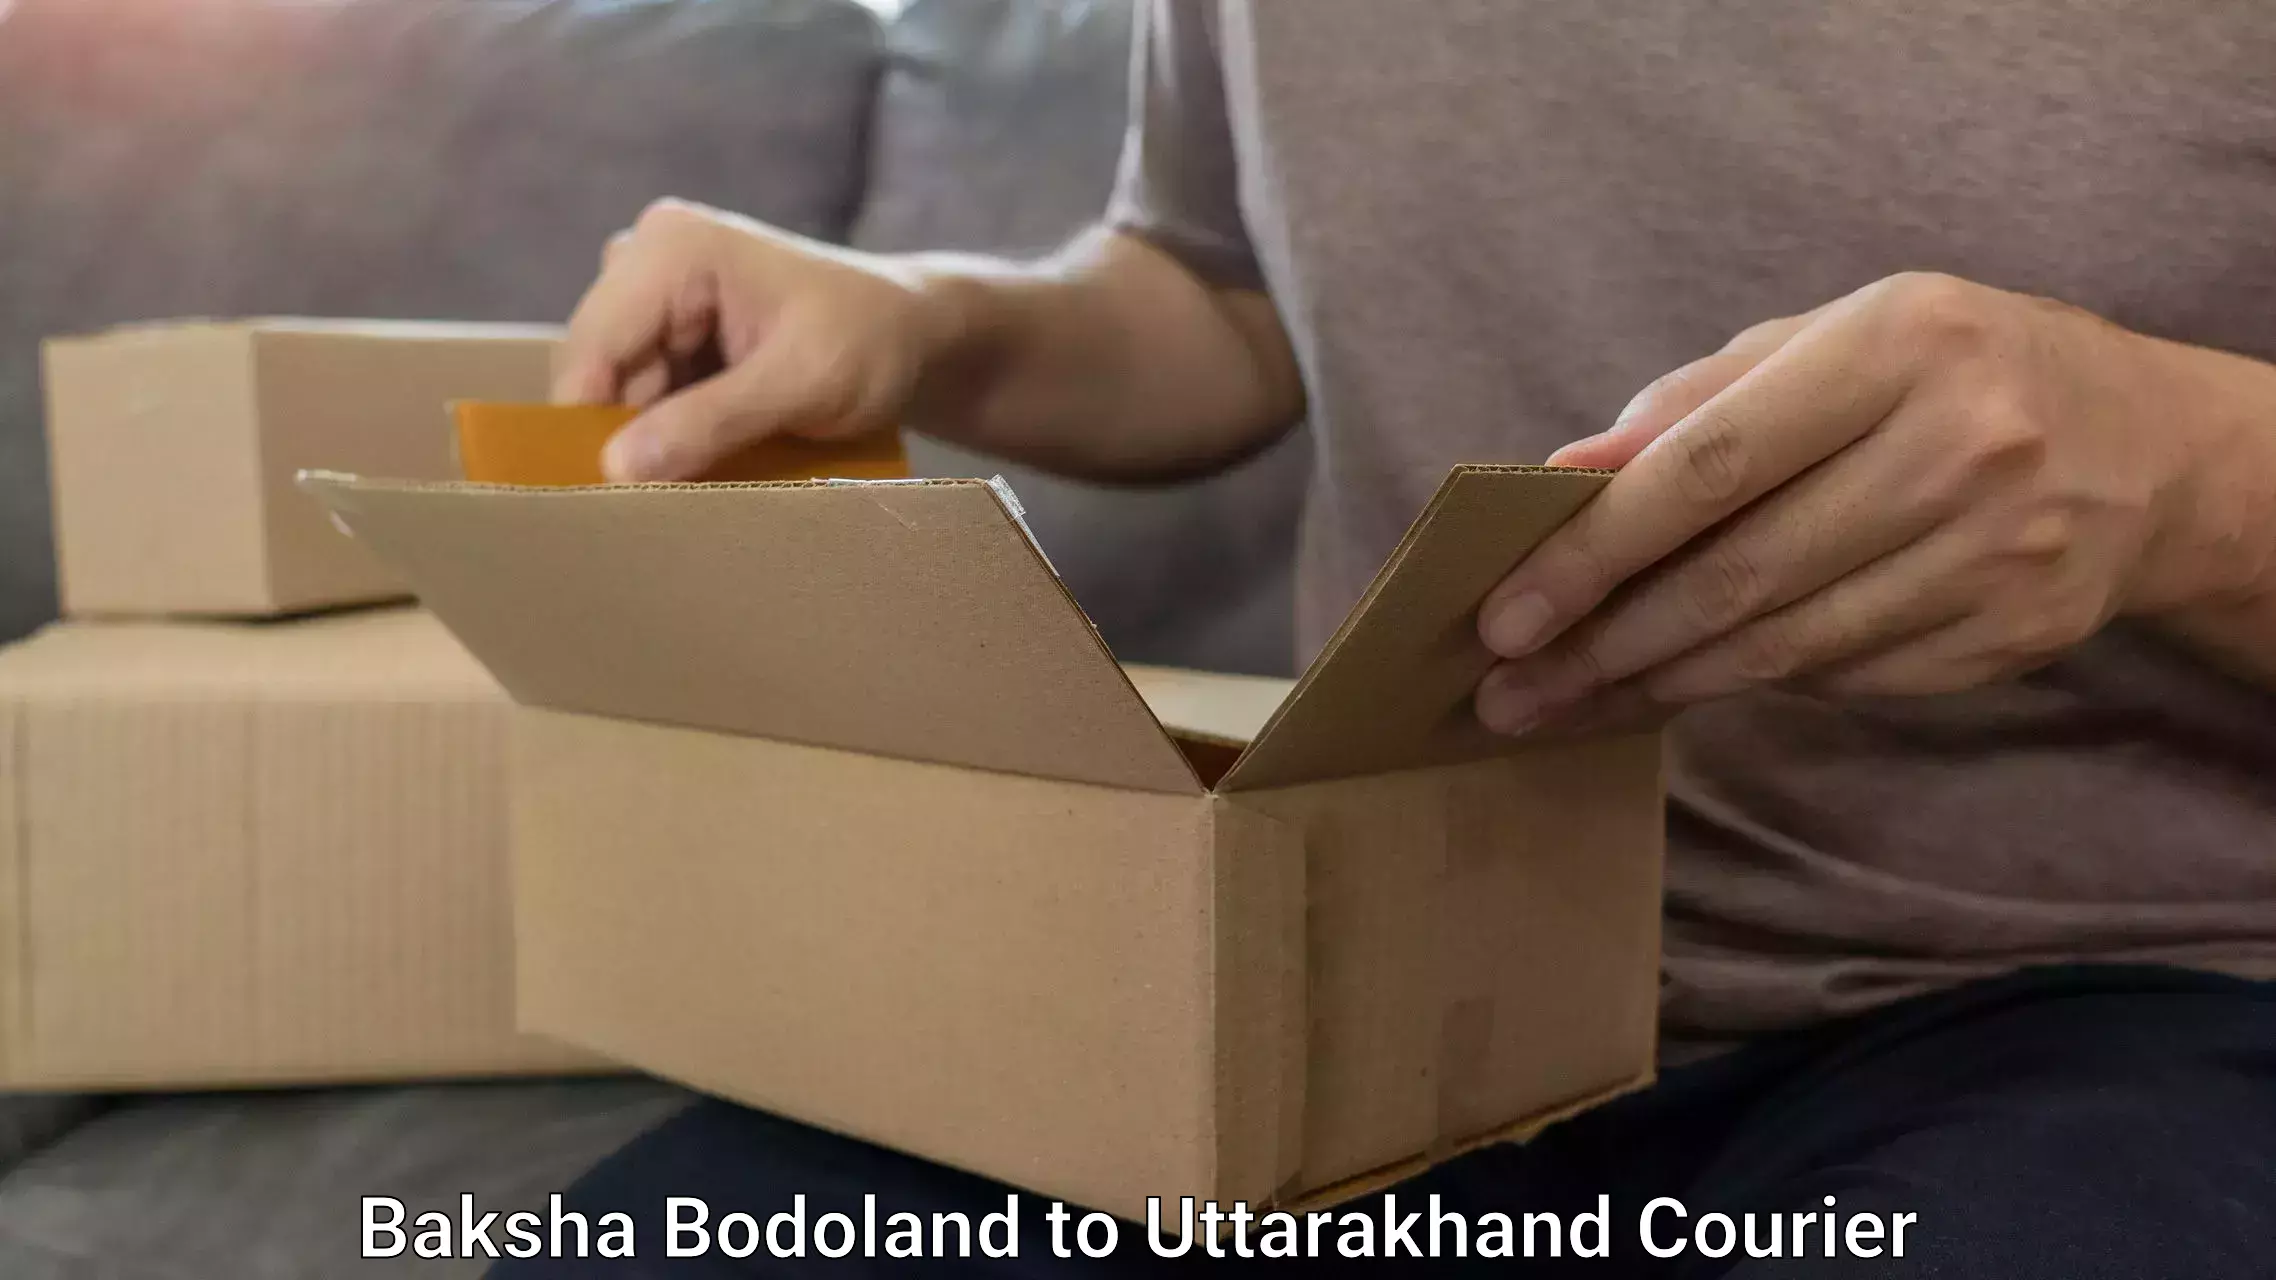 Luggage delivery providers Baksha Bodoland to Paithani